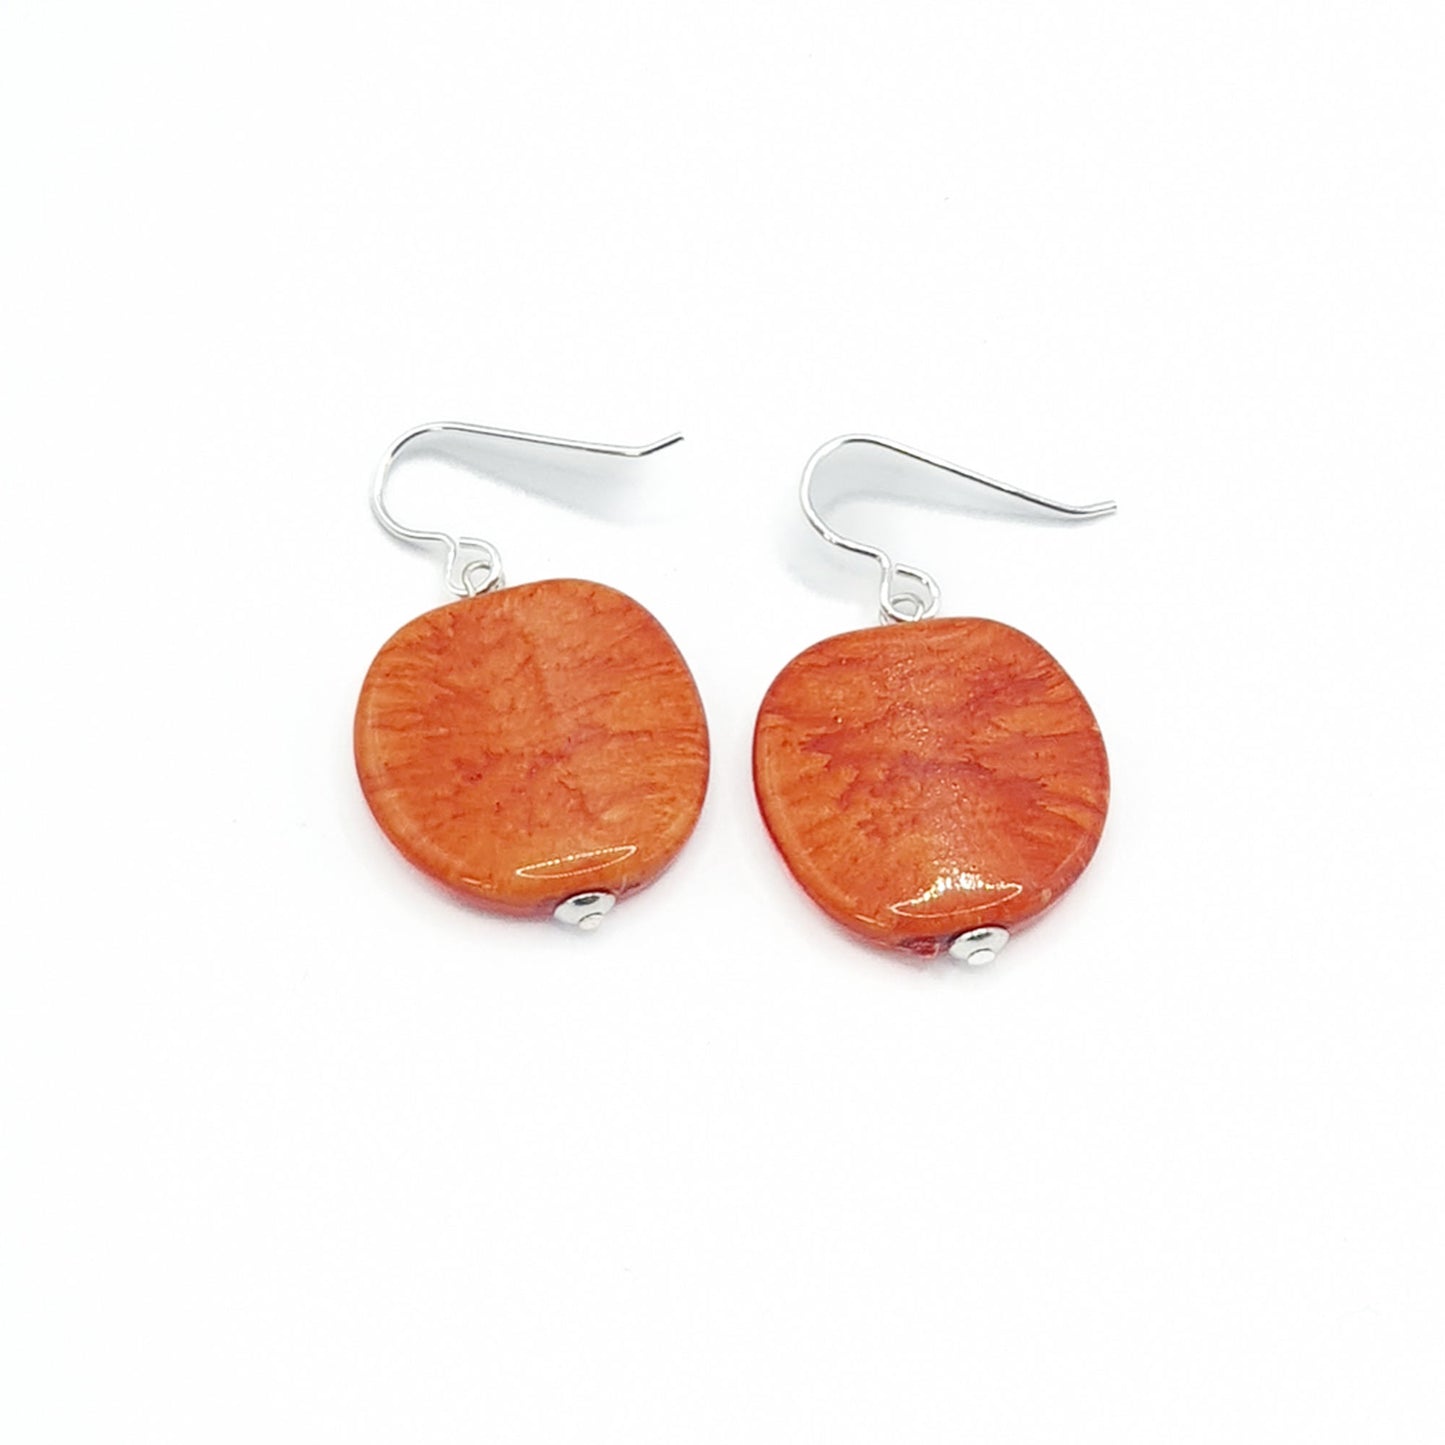 Resin pebble earrings in orange